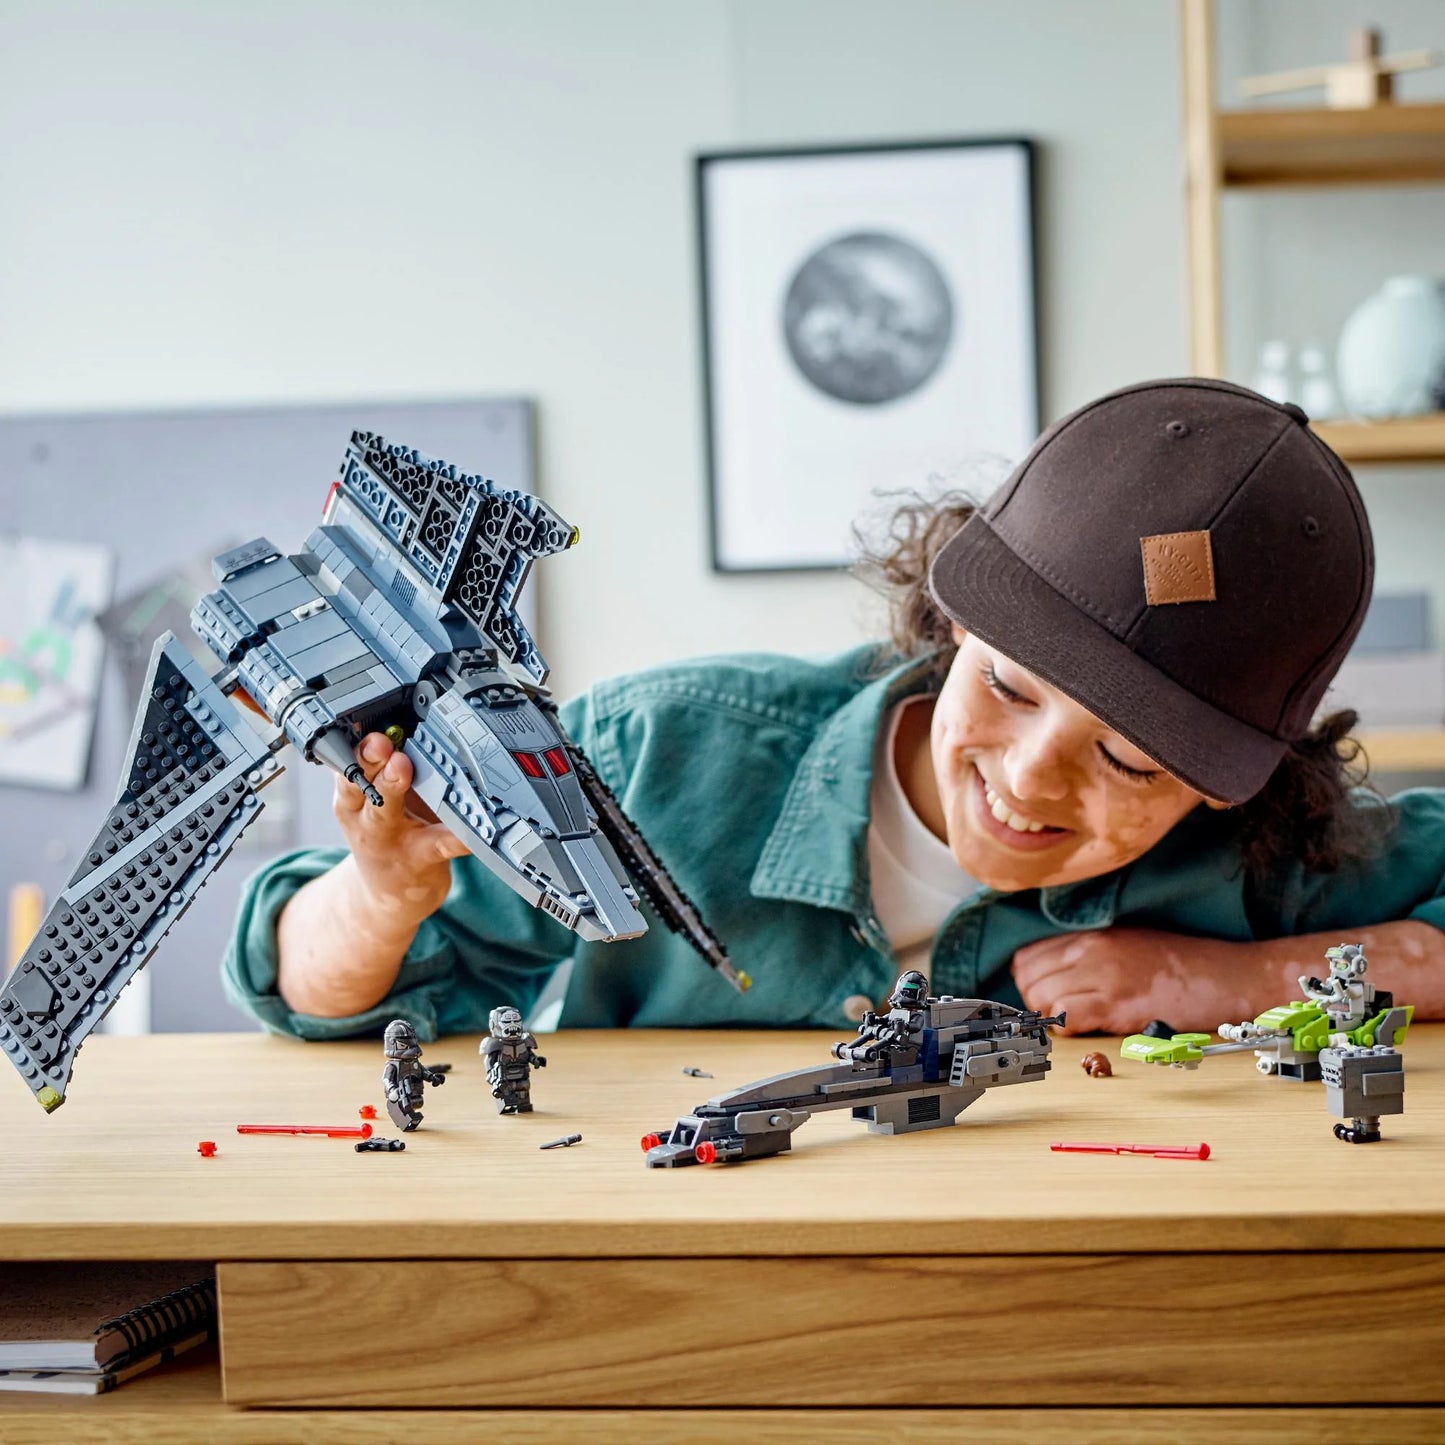 The Bad Batch aanvalsshuttle-LEGO Star Wars